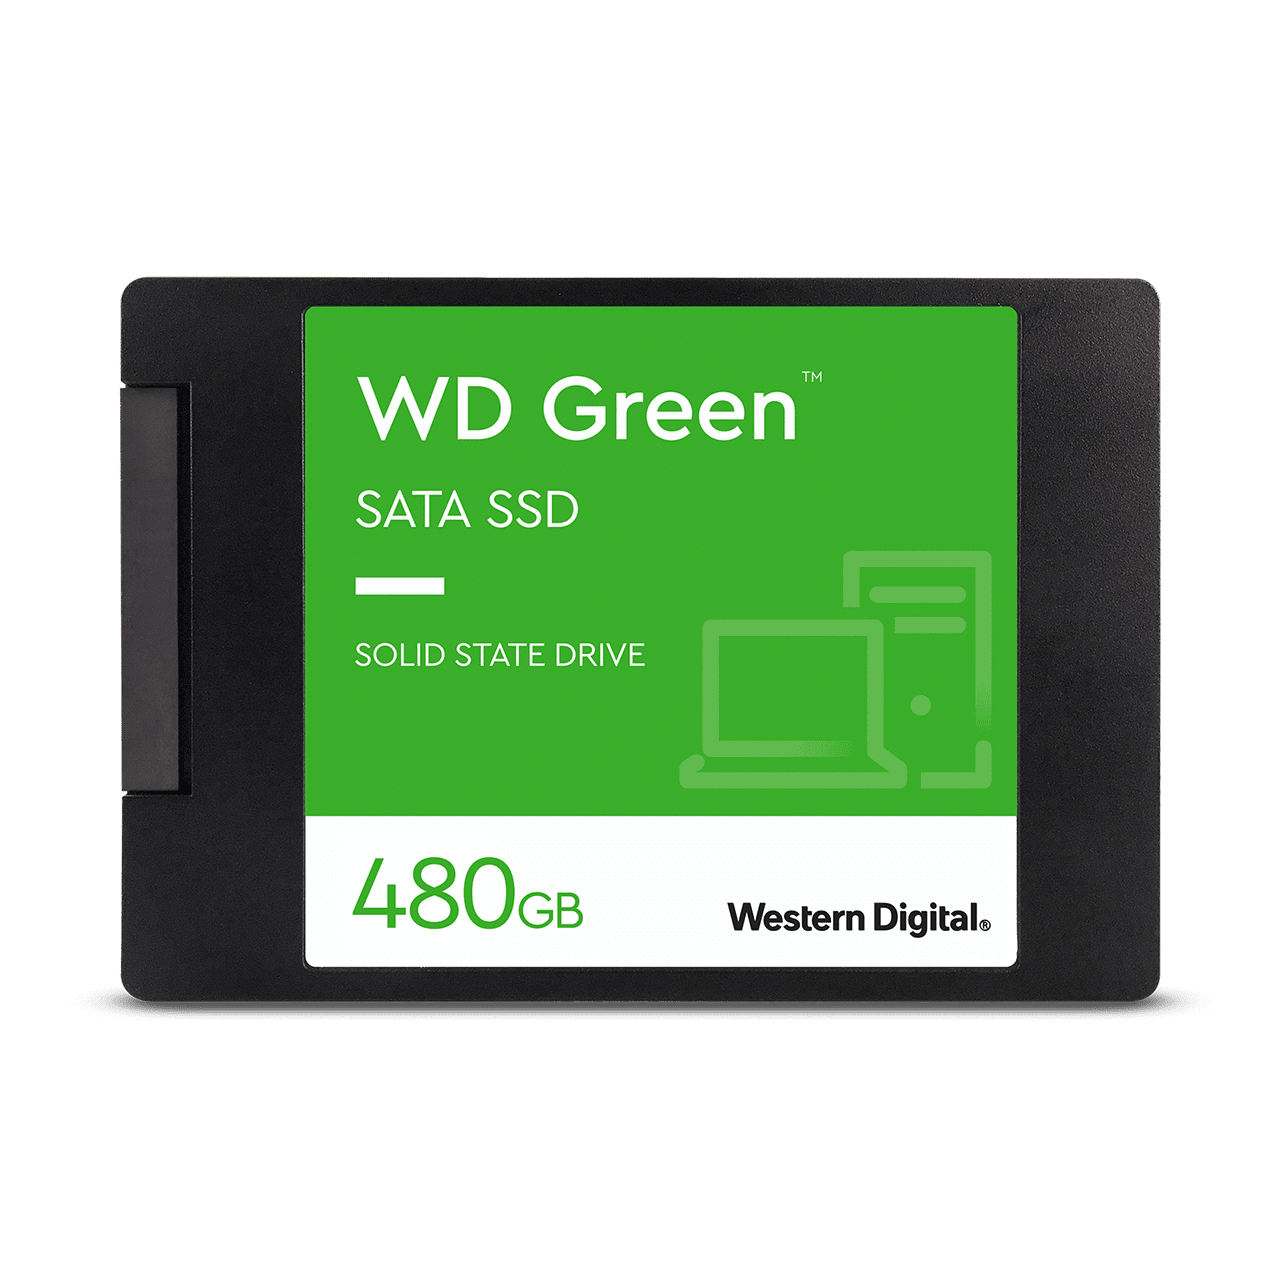 Buytec Online Shop WD Green™ SATA SSD 2.5”/7mm cased, WD GREEN 2.5" SATA INTERNAL SSD 480GB, shop internal 480ssd in Nairobi, buy 480ssd in Kenya, get ssd in Kenya